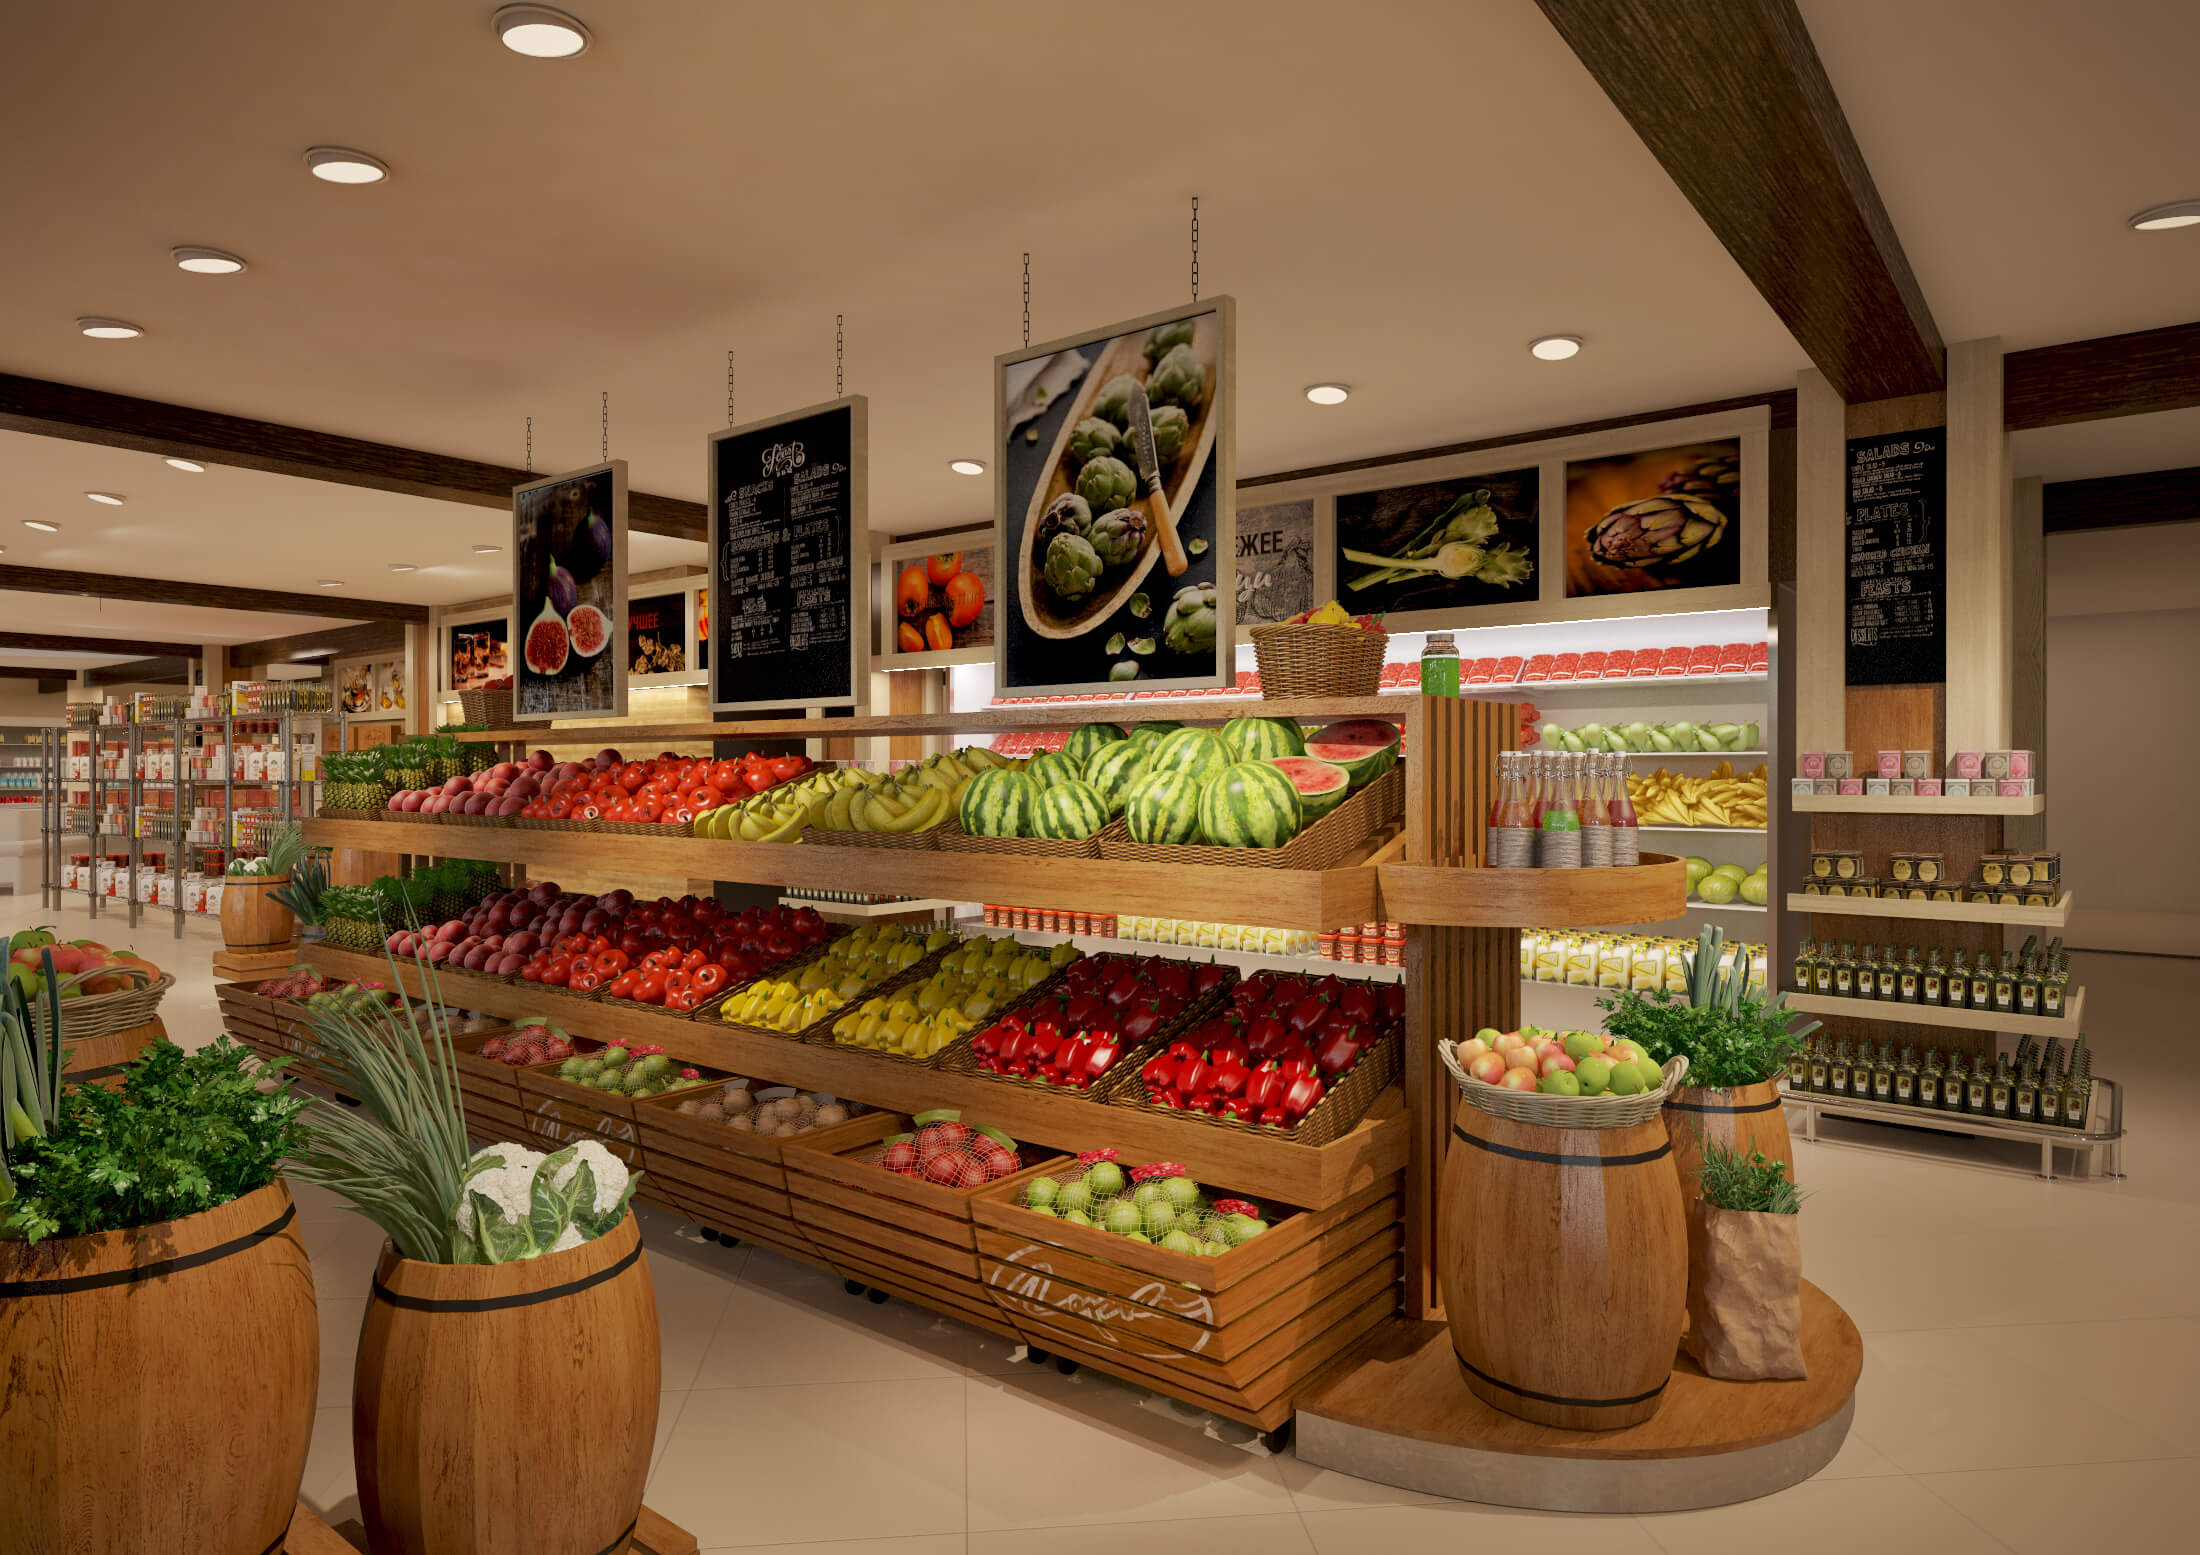 дизайн магазина фрукты овощи фото